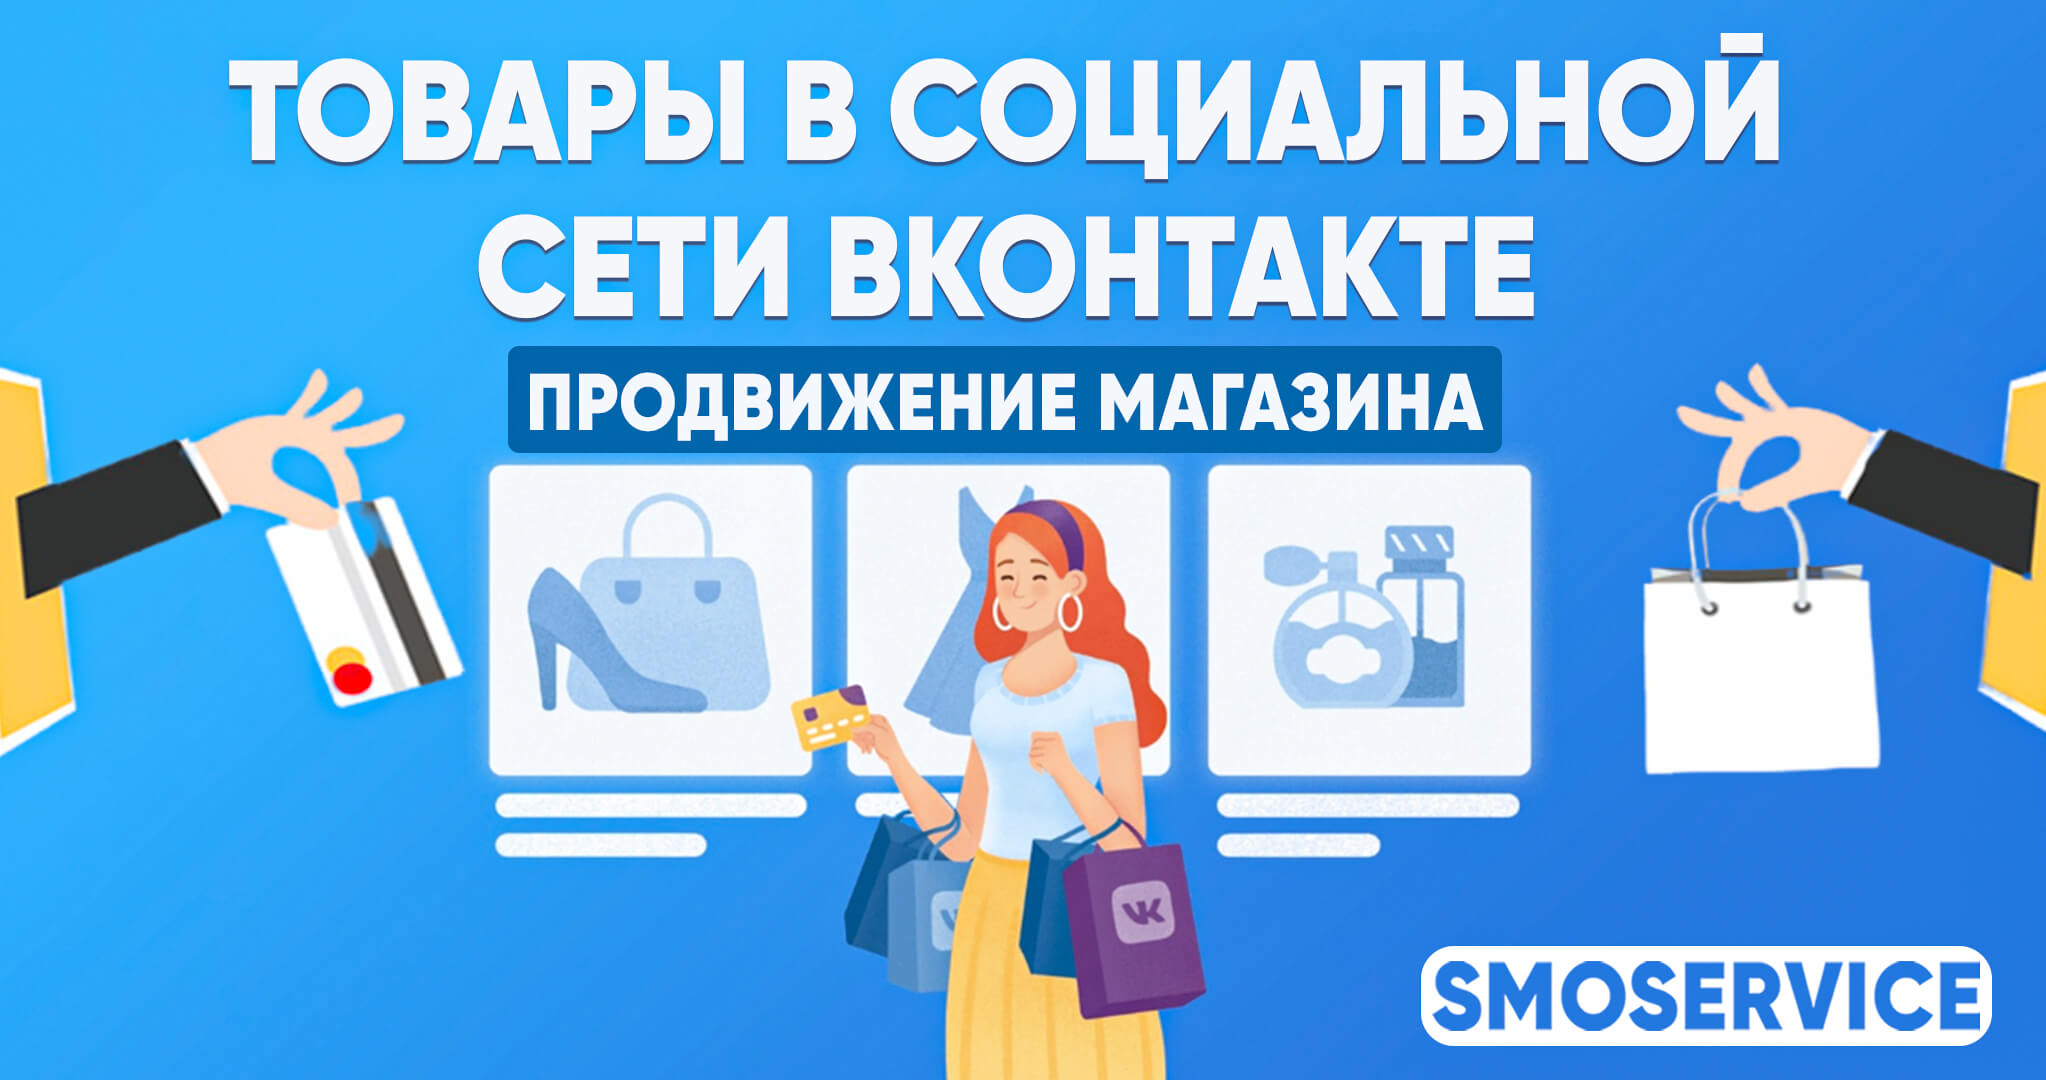 Как магазину продвигать свои товары в социальной сети ВКонтакте